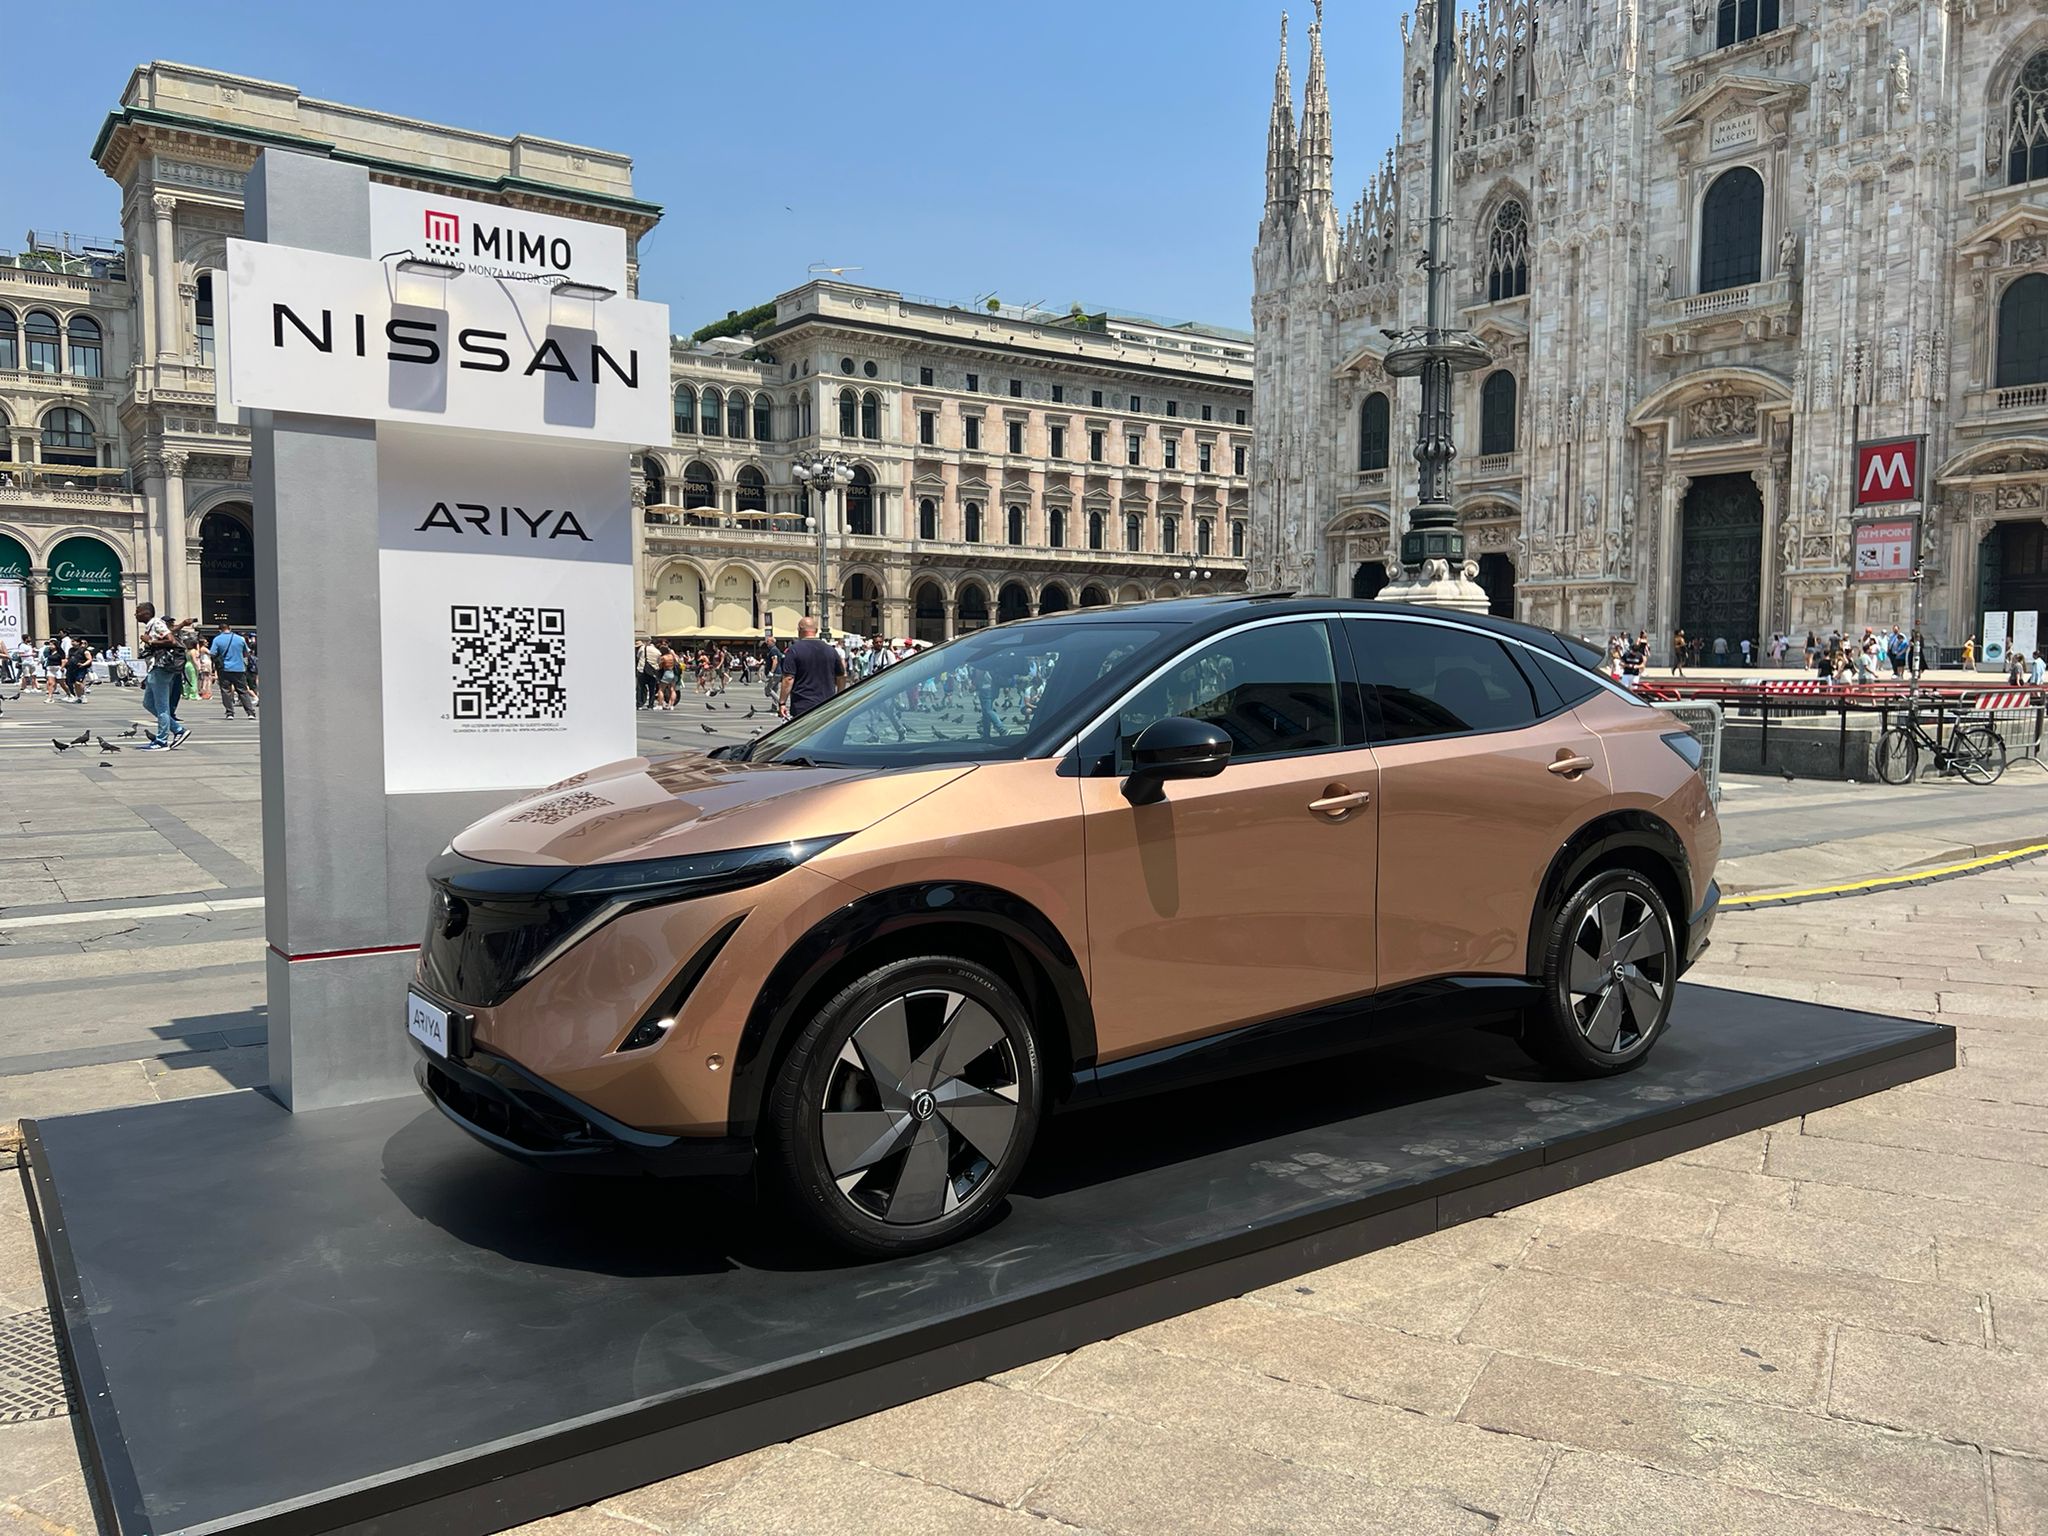 Nissan si presenta al Mimo 2022 esponendo la Ariya